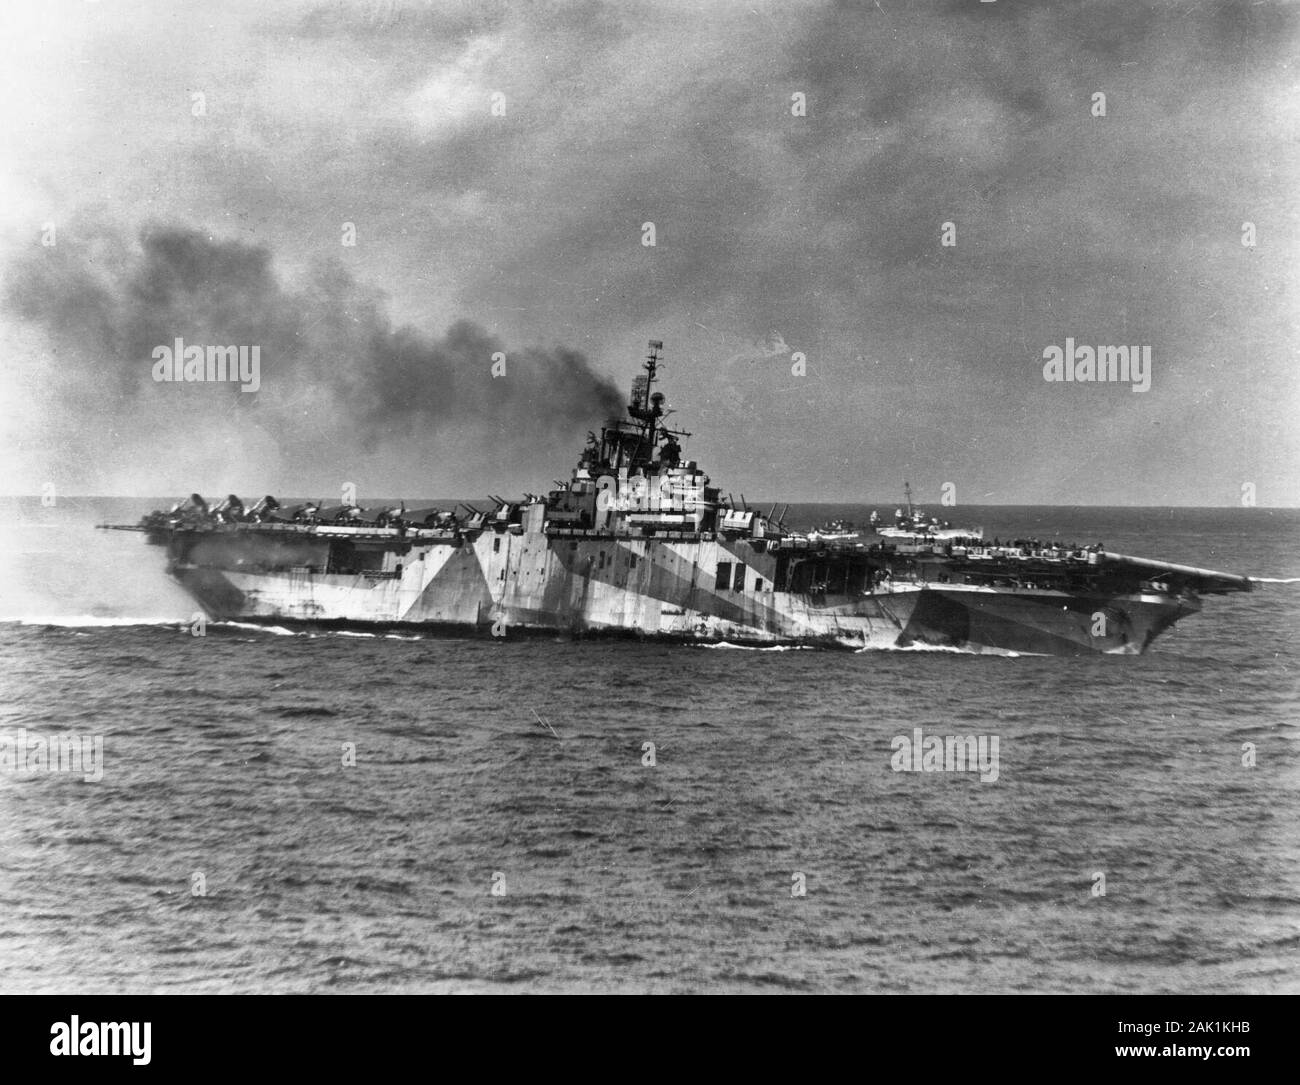 Gli Stati Uniti Navy portaerei USS Ticonderoga (CV-14) elenca al porto a seguito di un attacco kamikaze in cui quattro piani di suicidio ha colpito la nave, 21 gennaio 1945. Nota il suo schema di mimetizzazione misurare 33/10A e la Fletcher-class destroyer in background. Foto Stock